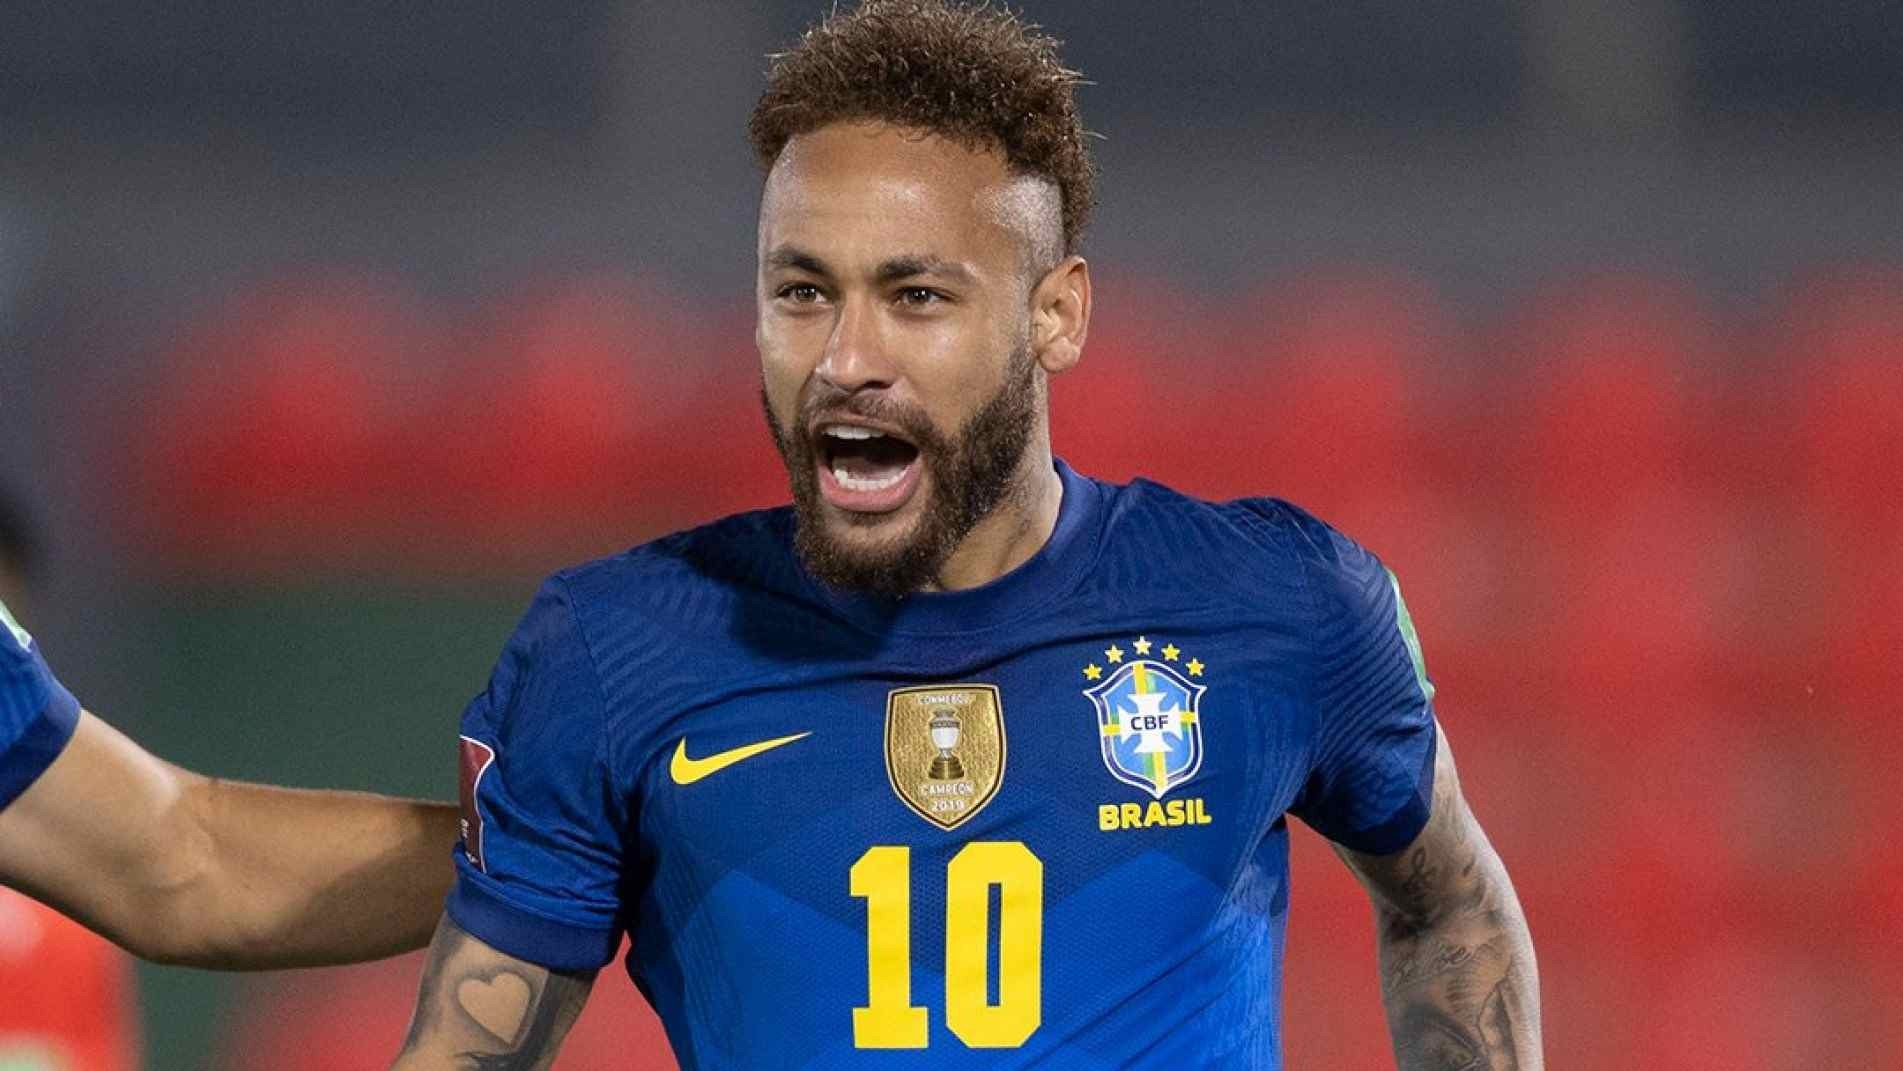 O documentário Neymar: O Caos Perfeito vai contar a história de vida do craque brasileiro